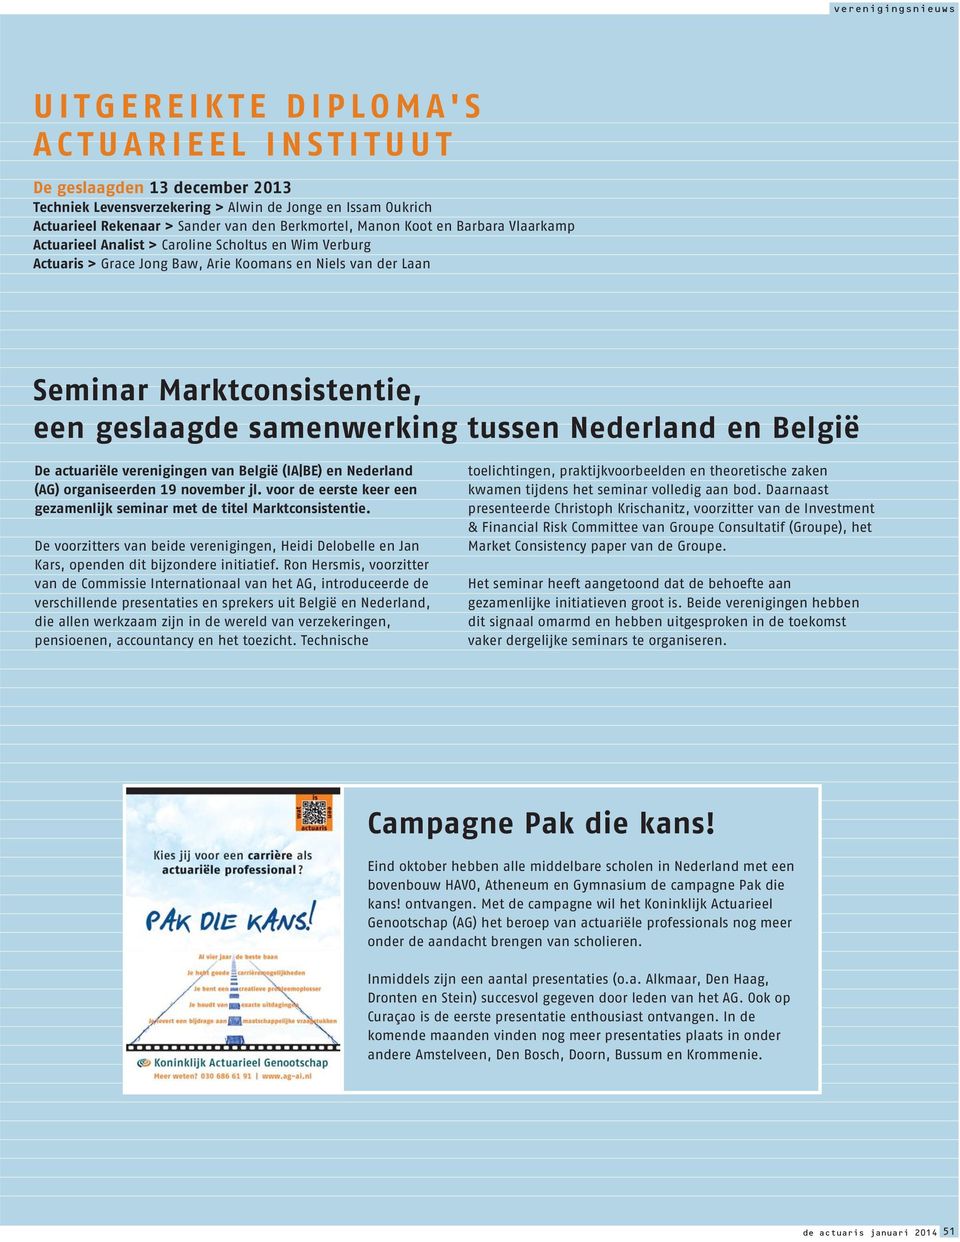 Nederland en België De actuariële verenigingen van België (IA BE) en Nederland (AG) organiseerden 19 november jl. voor de eerste keer een gezamenlijk seminar met de titel Marktconsistentie.